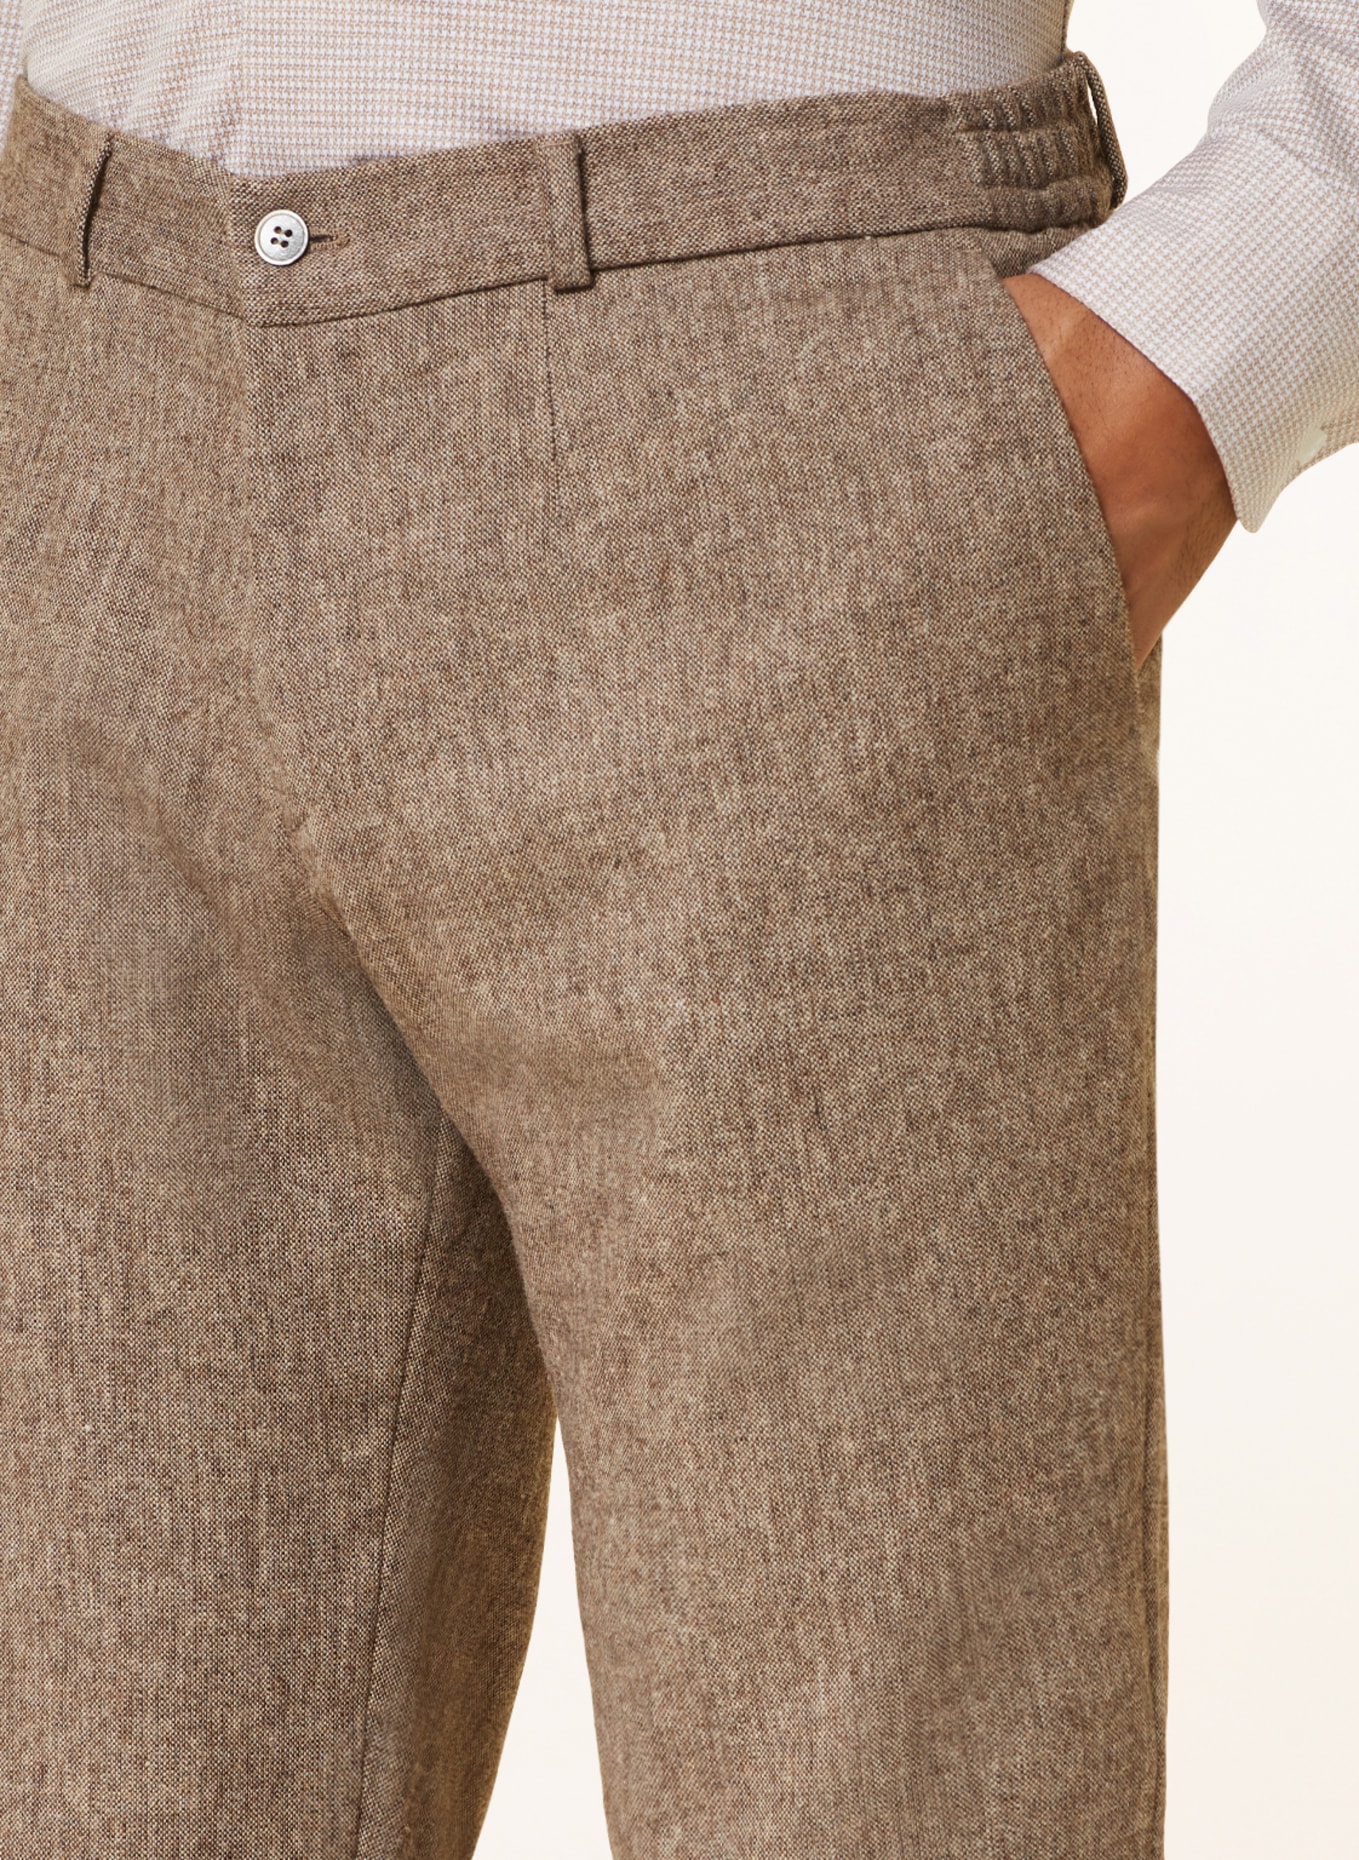 PAUL Suit trousers slim fit, Color: 270 CAMEL (Image 6)